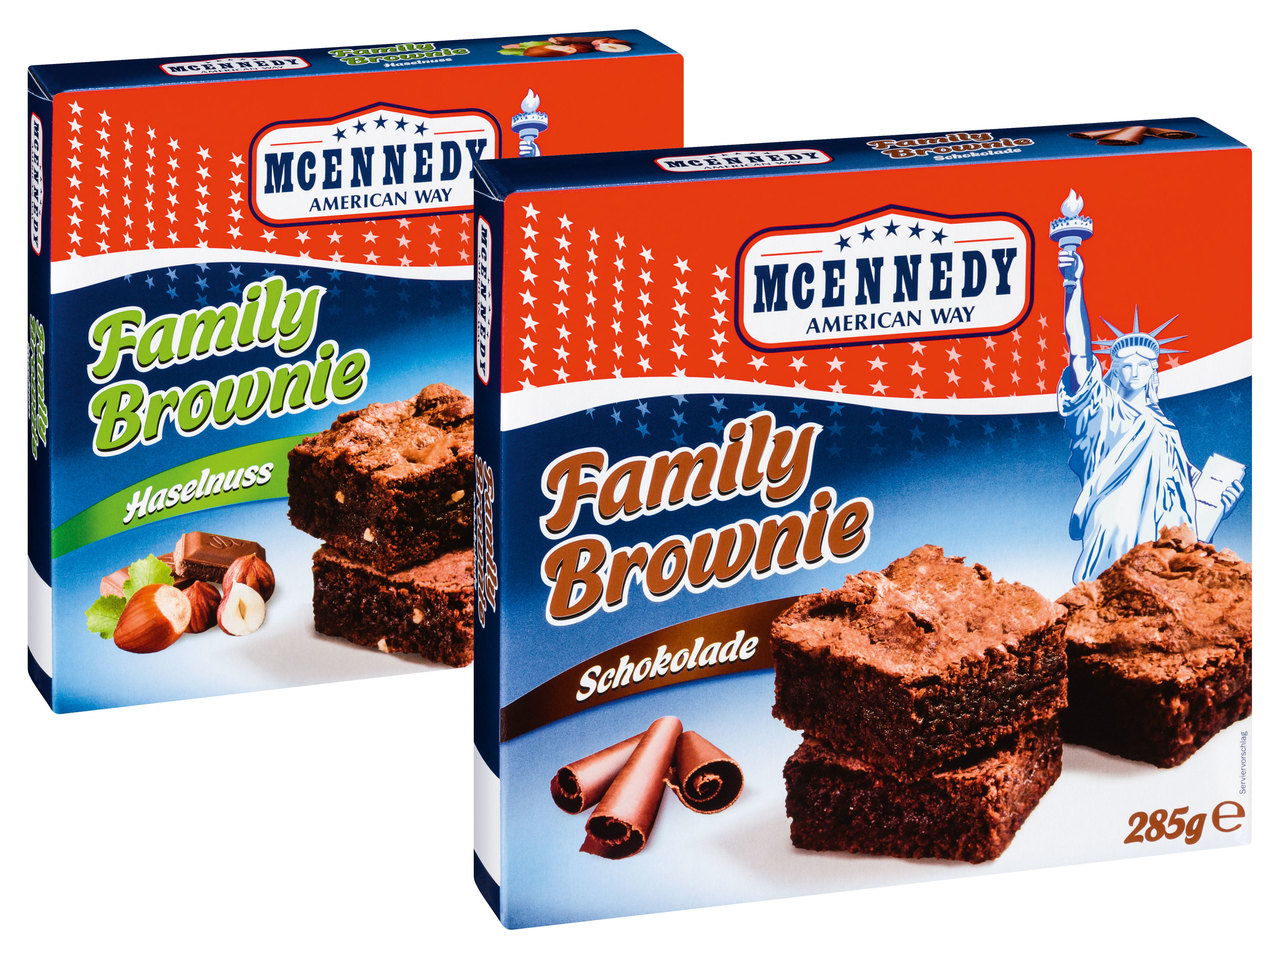 MCENNEDY Family Brownie